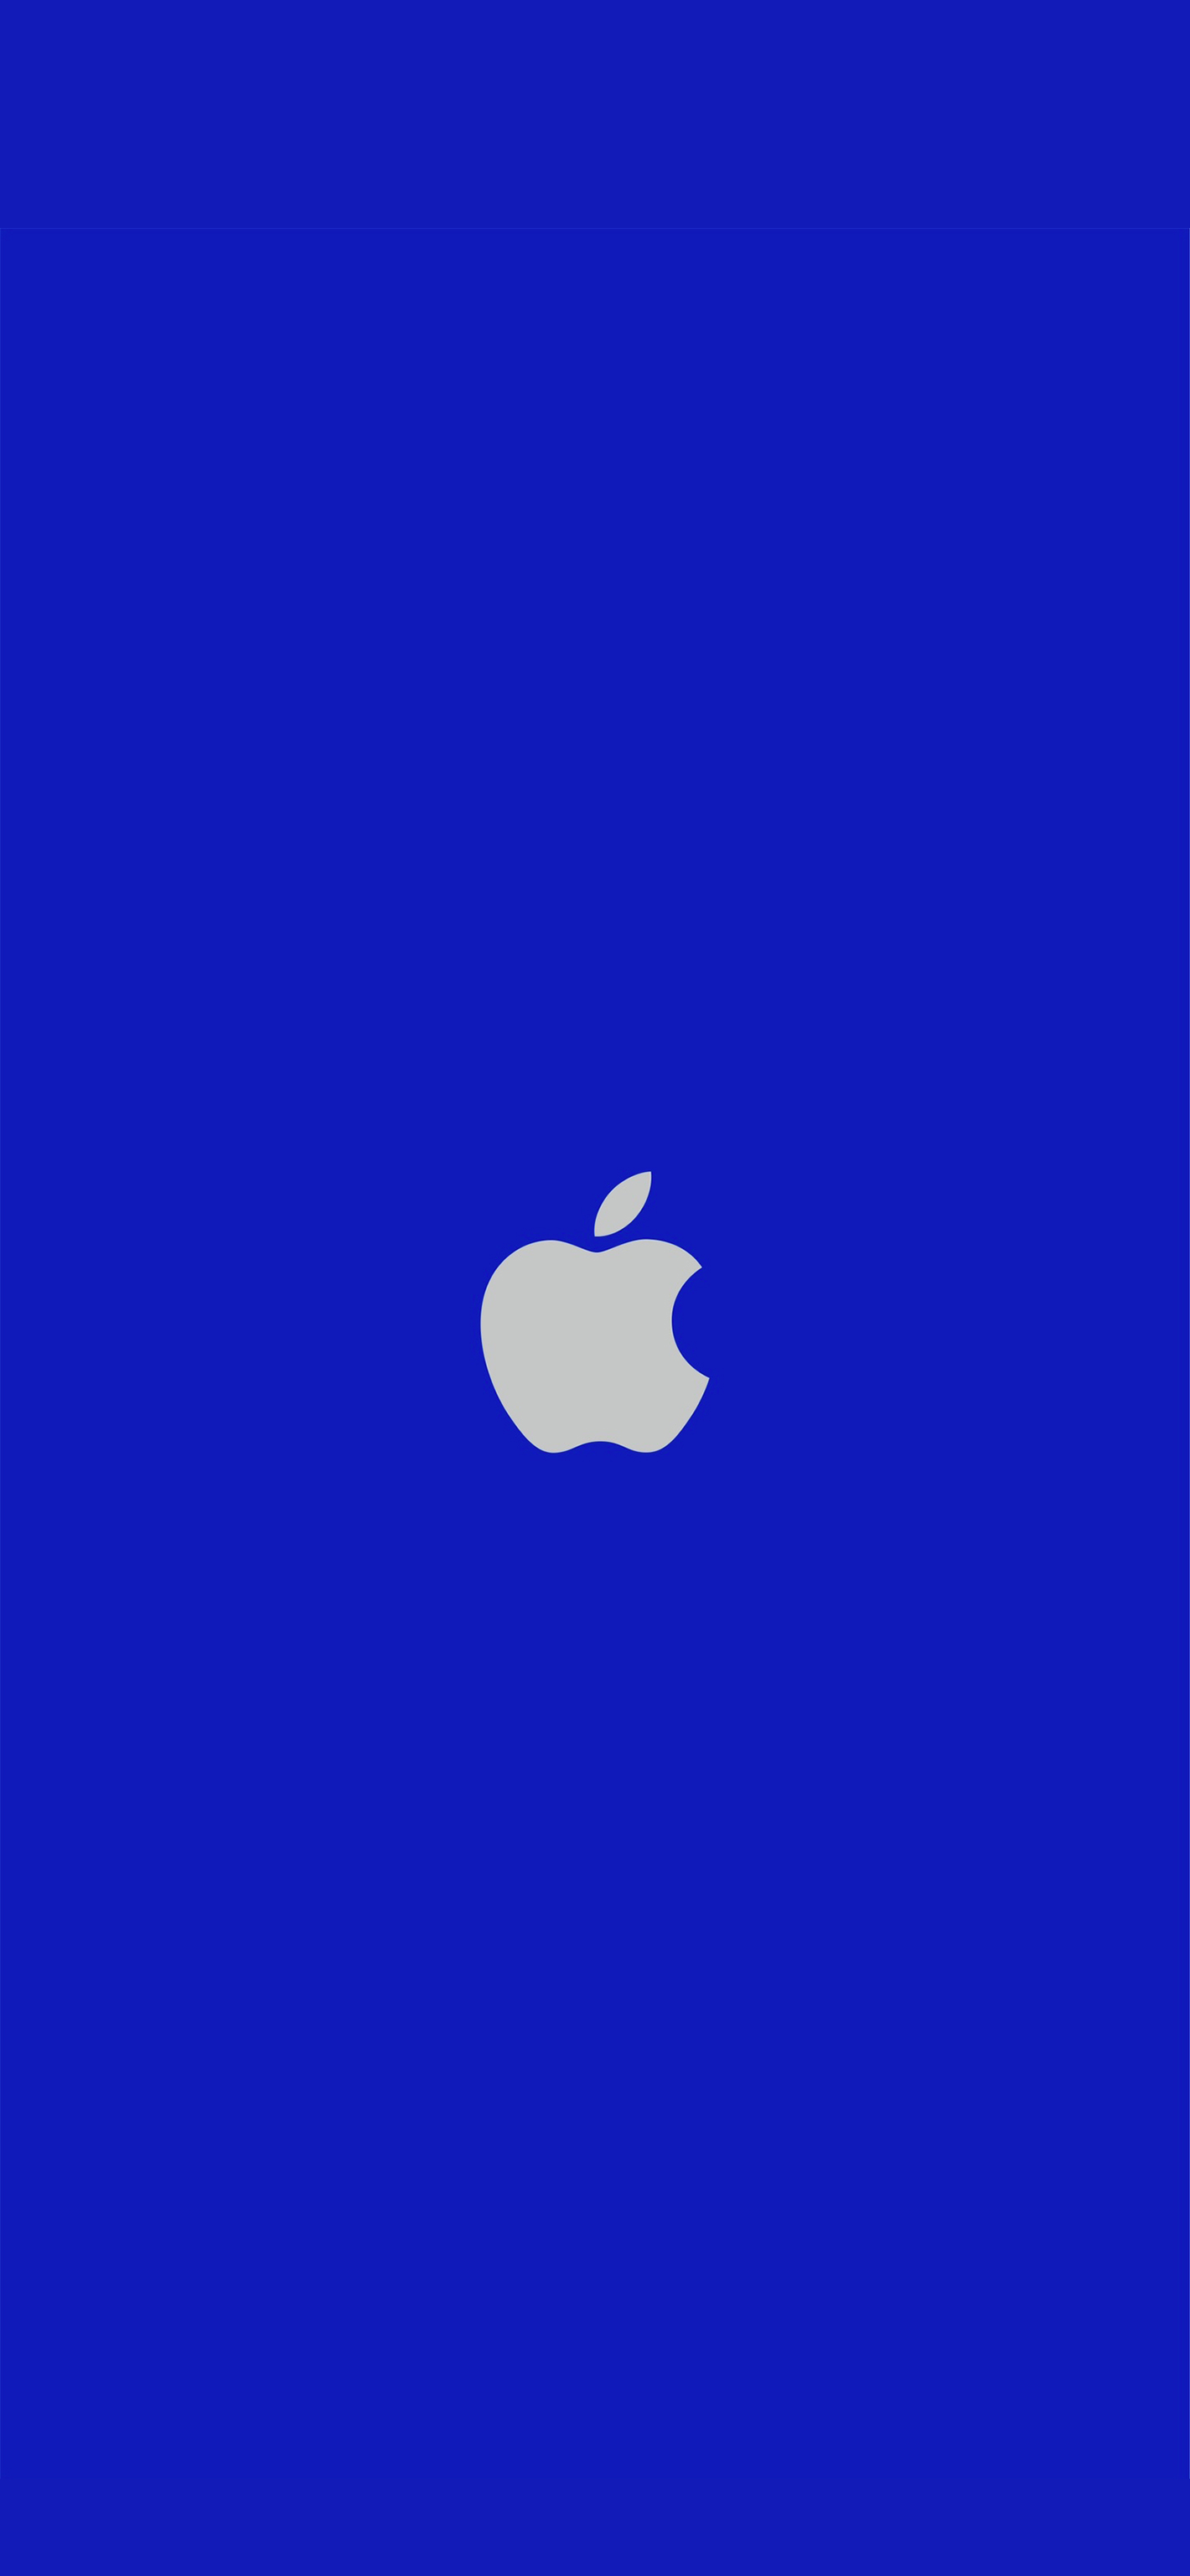 Download wallpapers 4k Apple blue logo blue grid backgrounds brands  Apple logo grunge art Apple for desktop free Pictures for desktop free